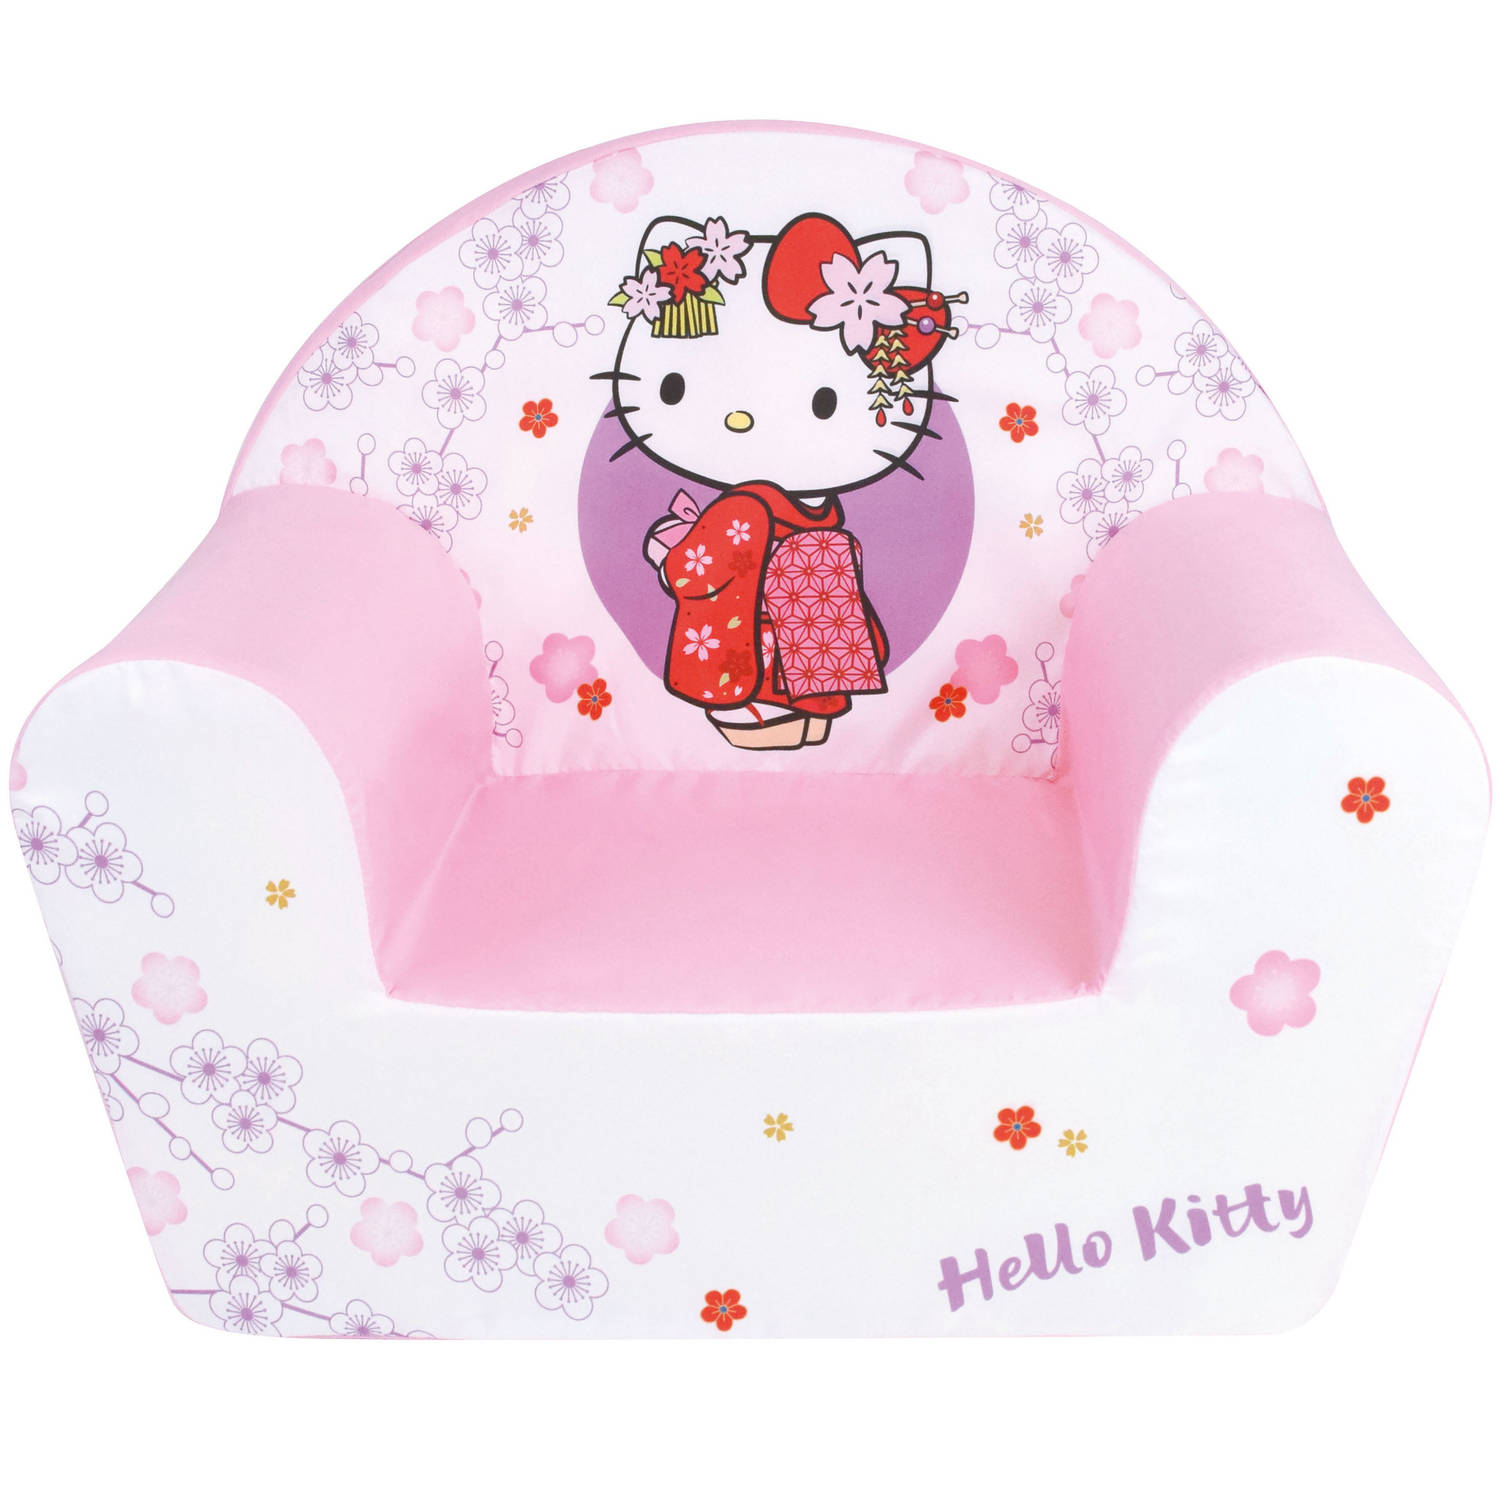 Jemini stoel Hello Kitty meisjes 52 x 33 x 42 cm wit-roze